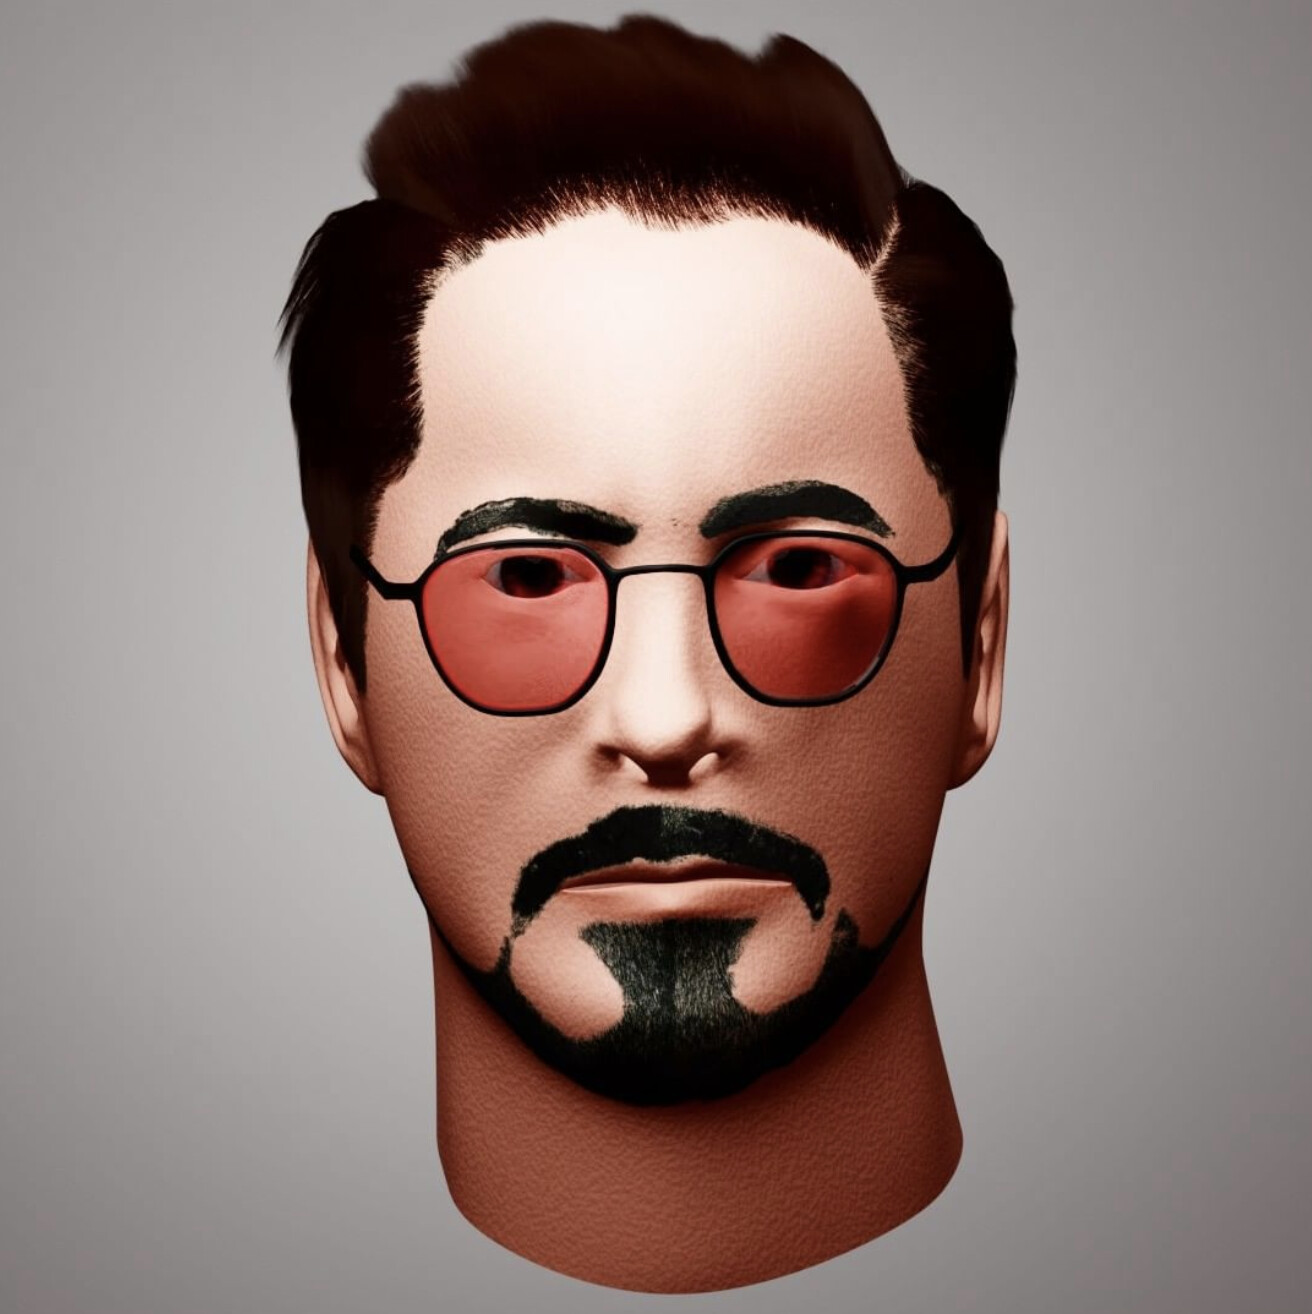 ArtStation - 3D Portrait of Robert Downey Jr Fan Art